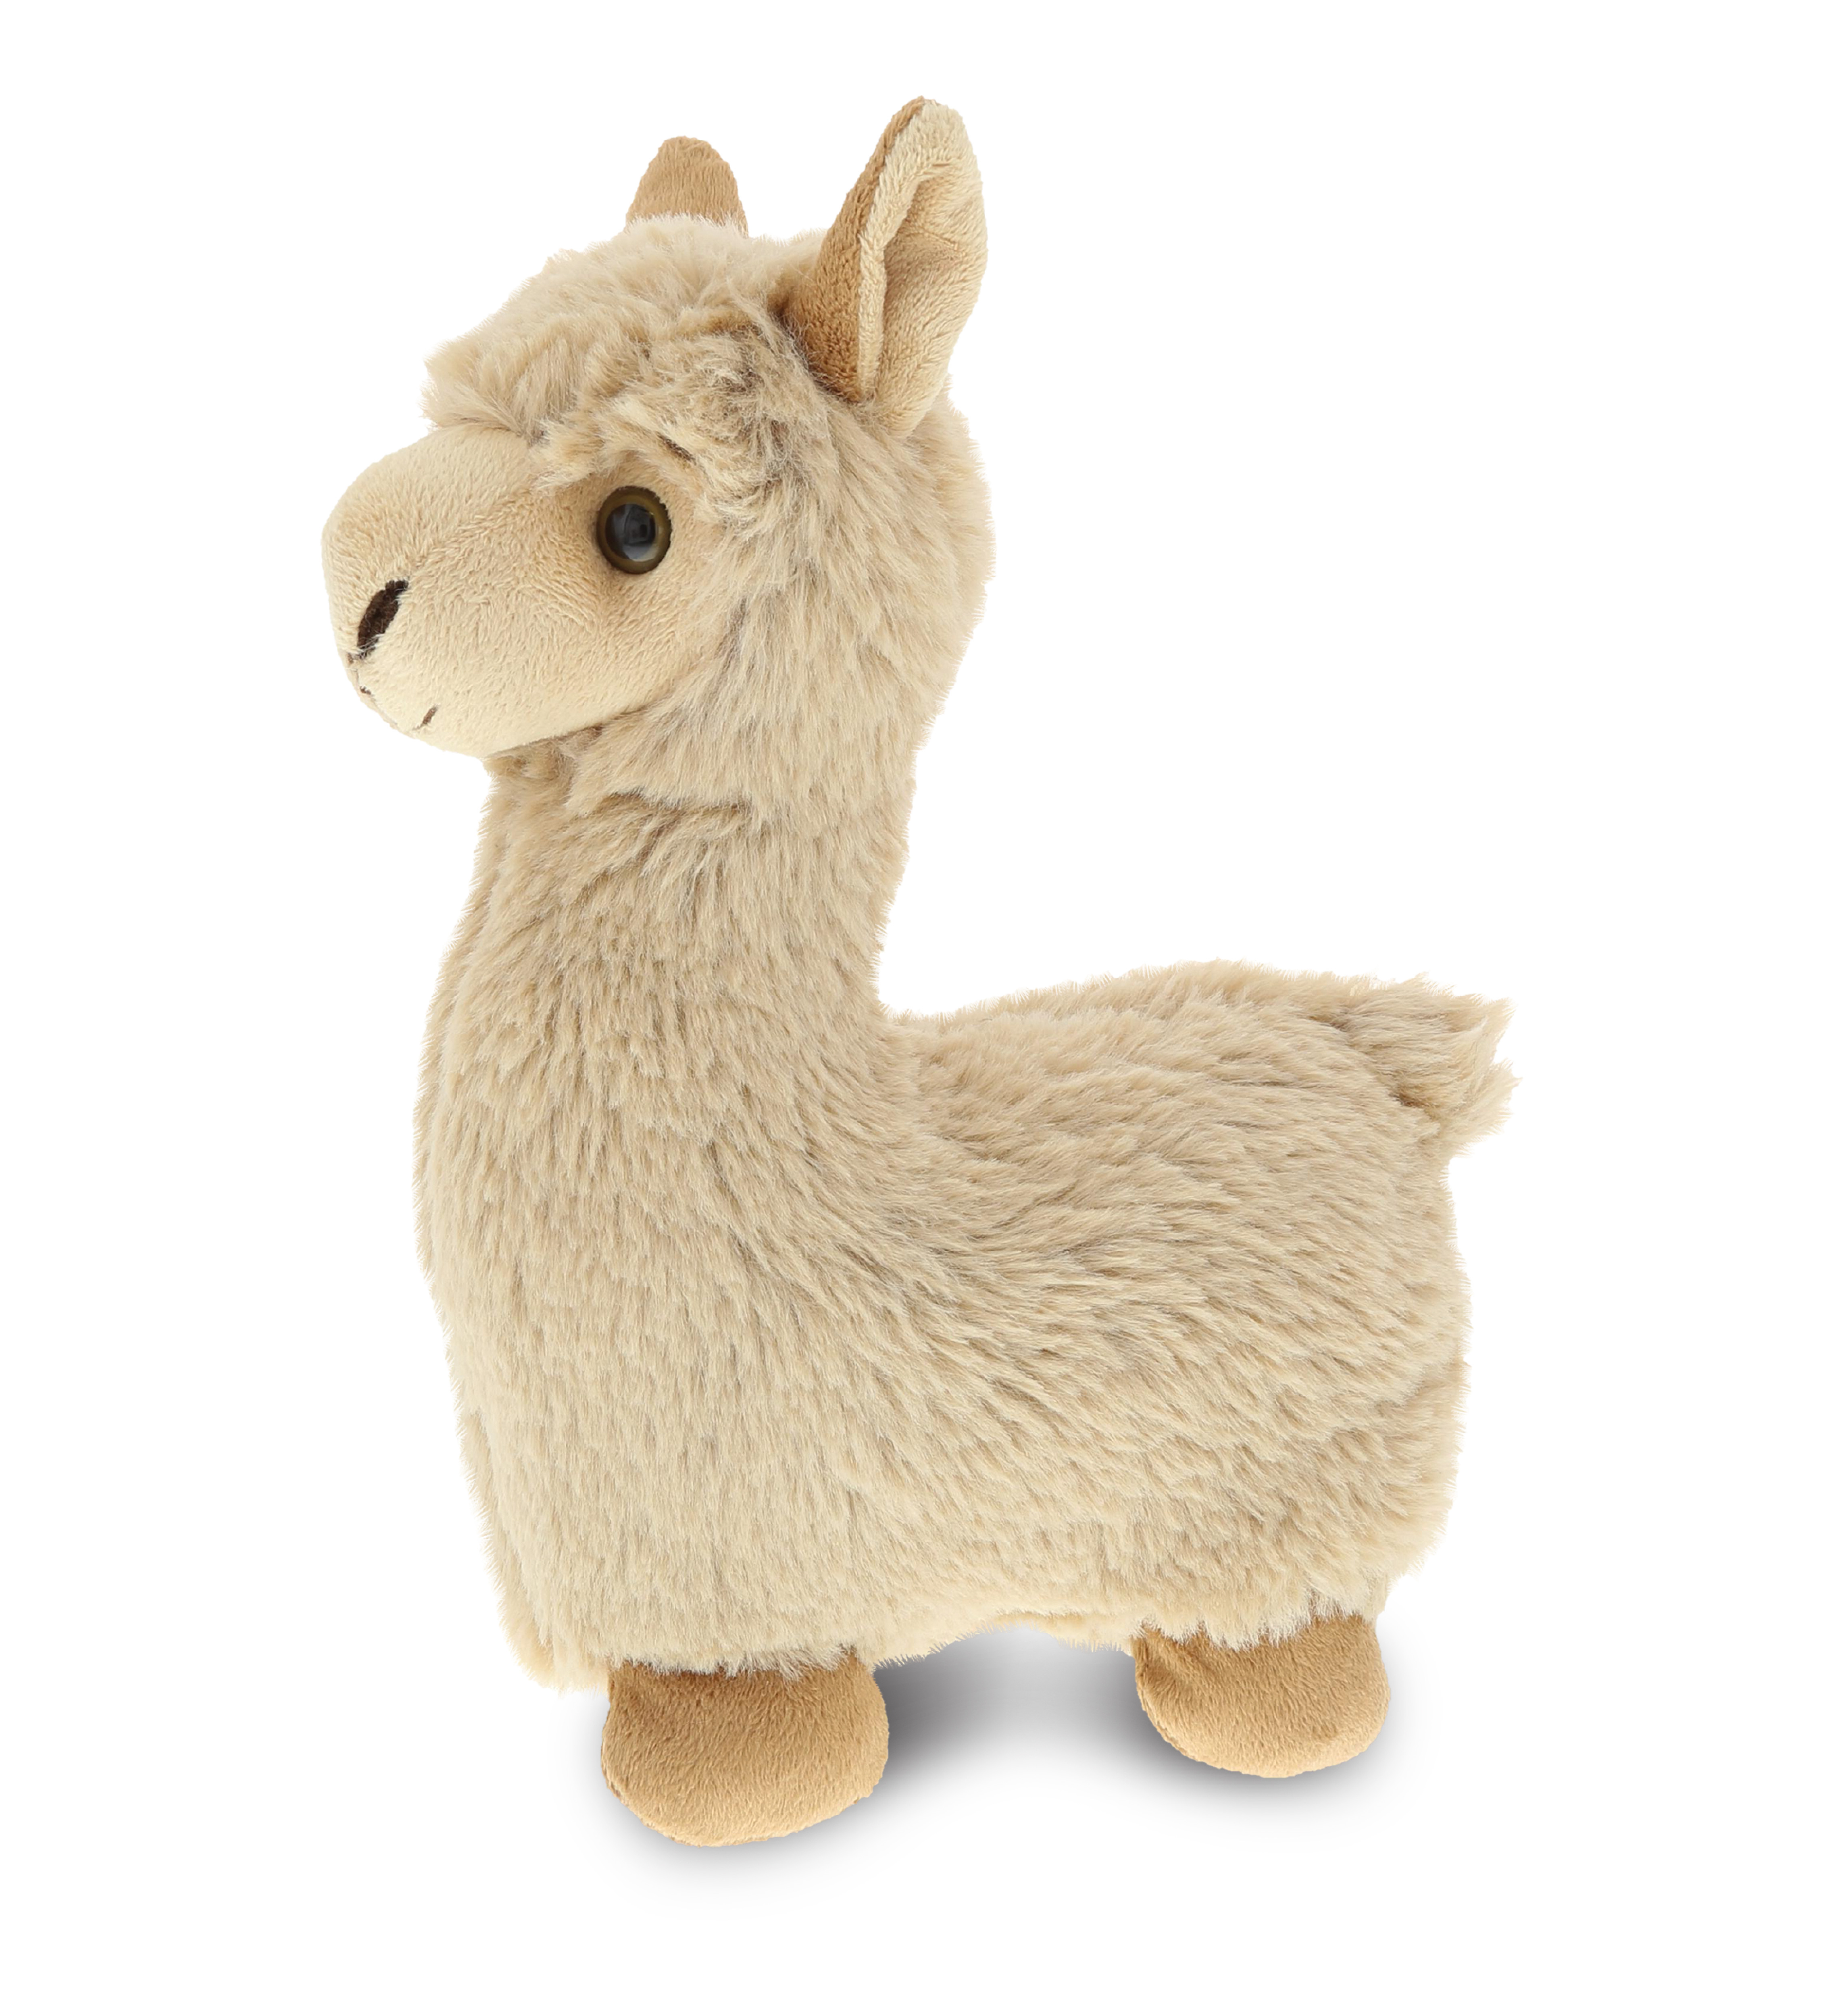 Stuffed llama toy